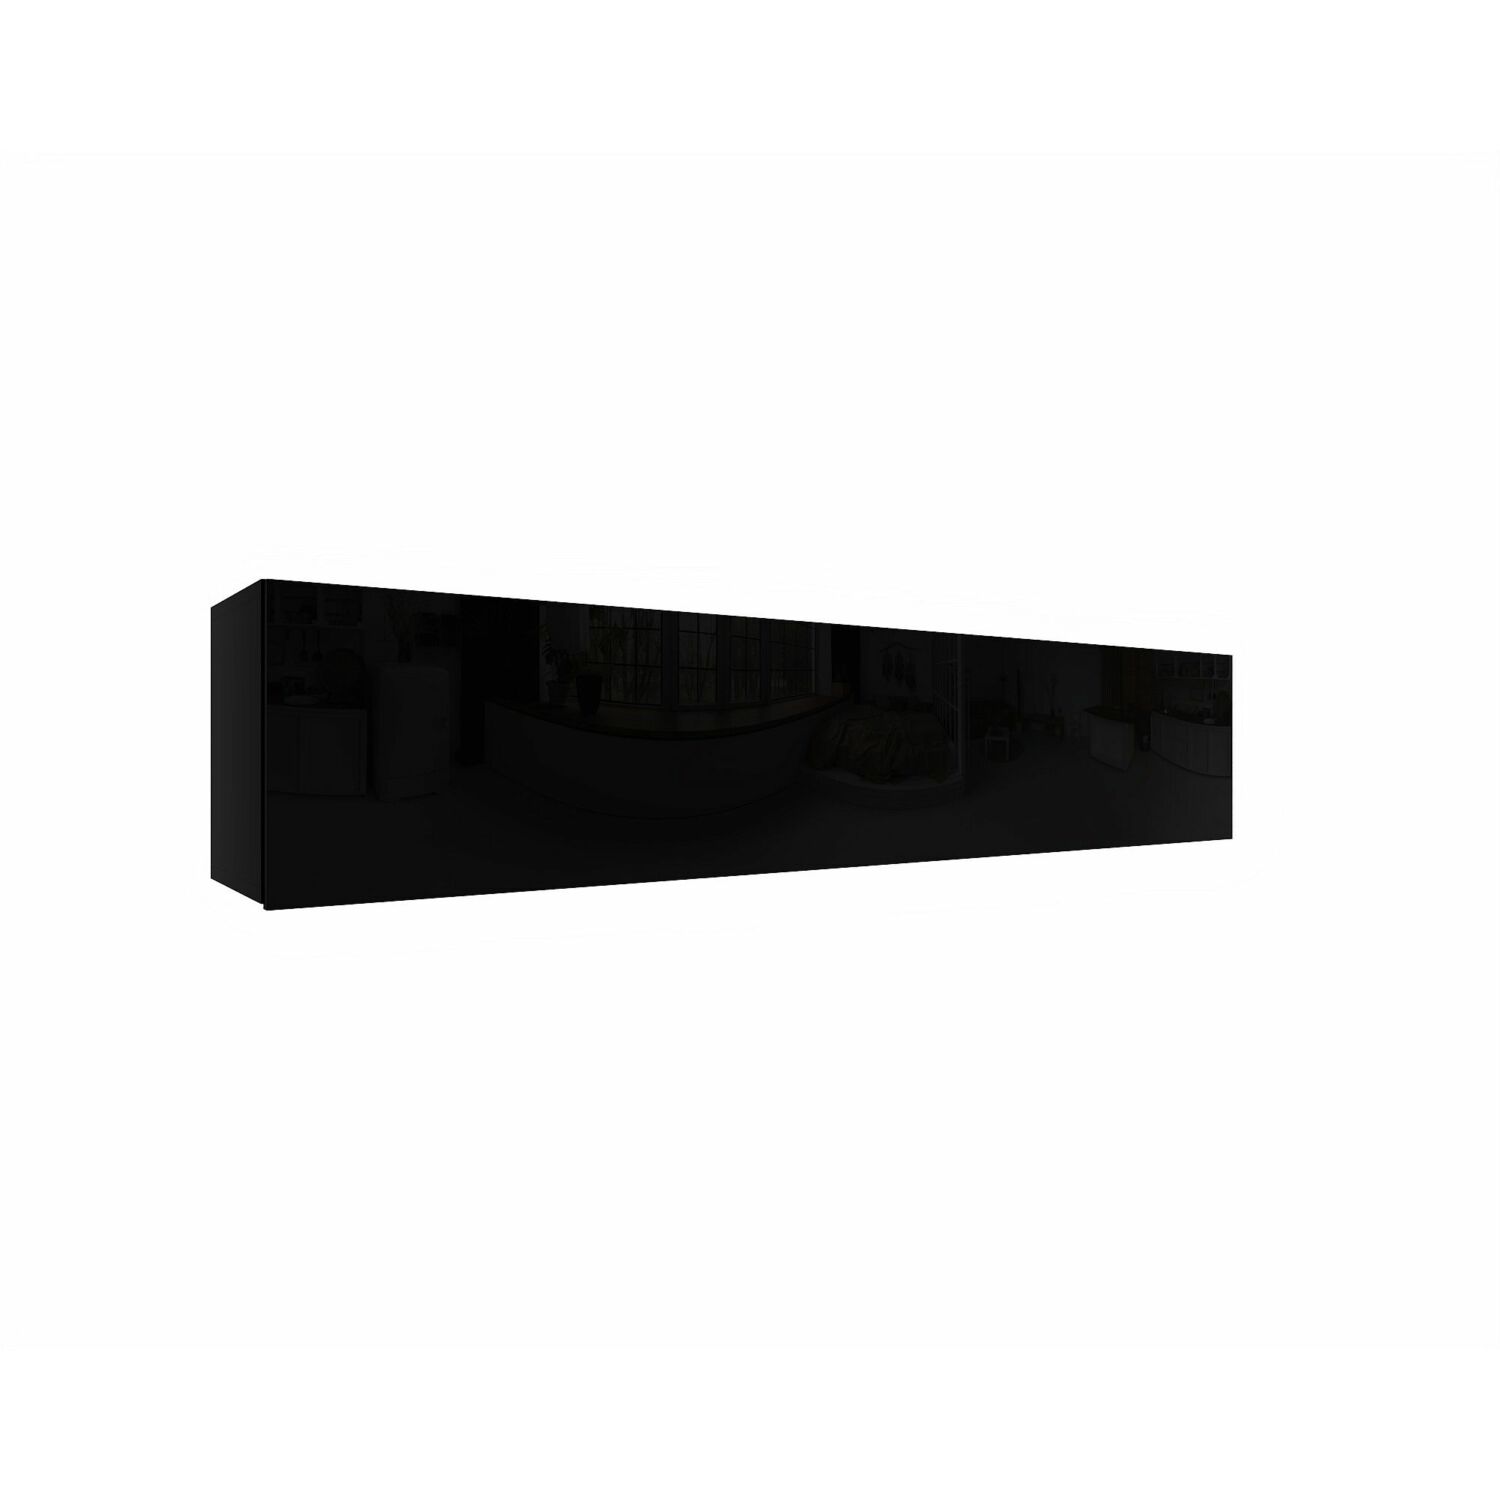 IZUMI 34 BL magasfényű fekete polcos szekrény 175 cm